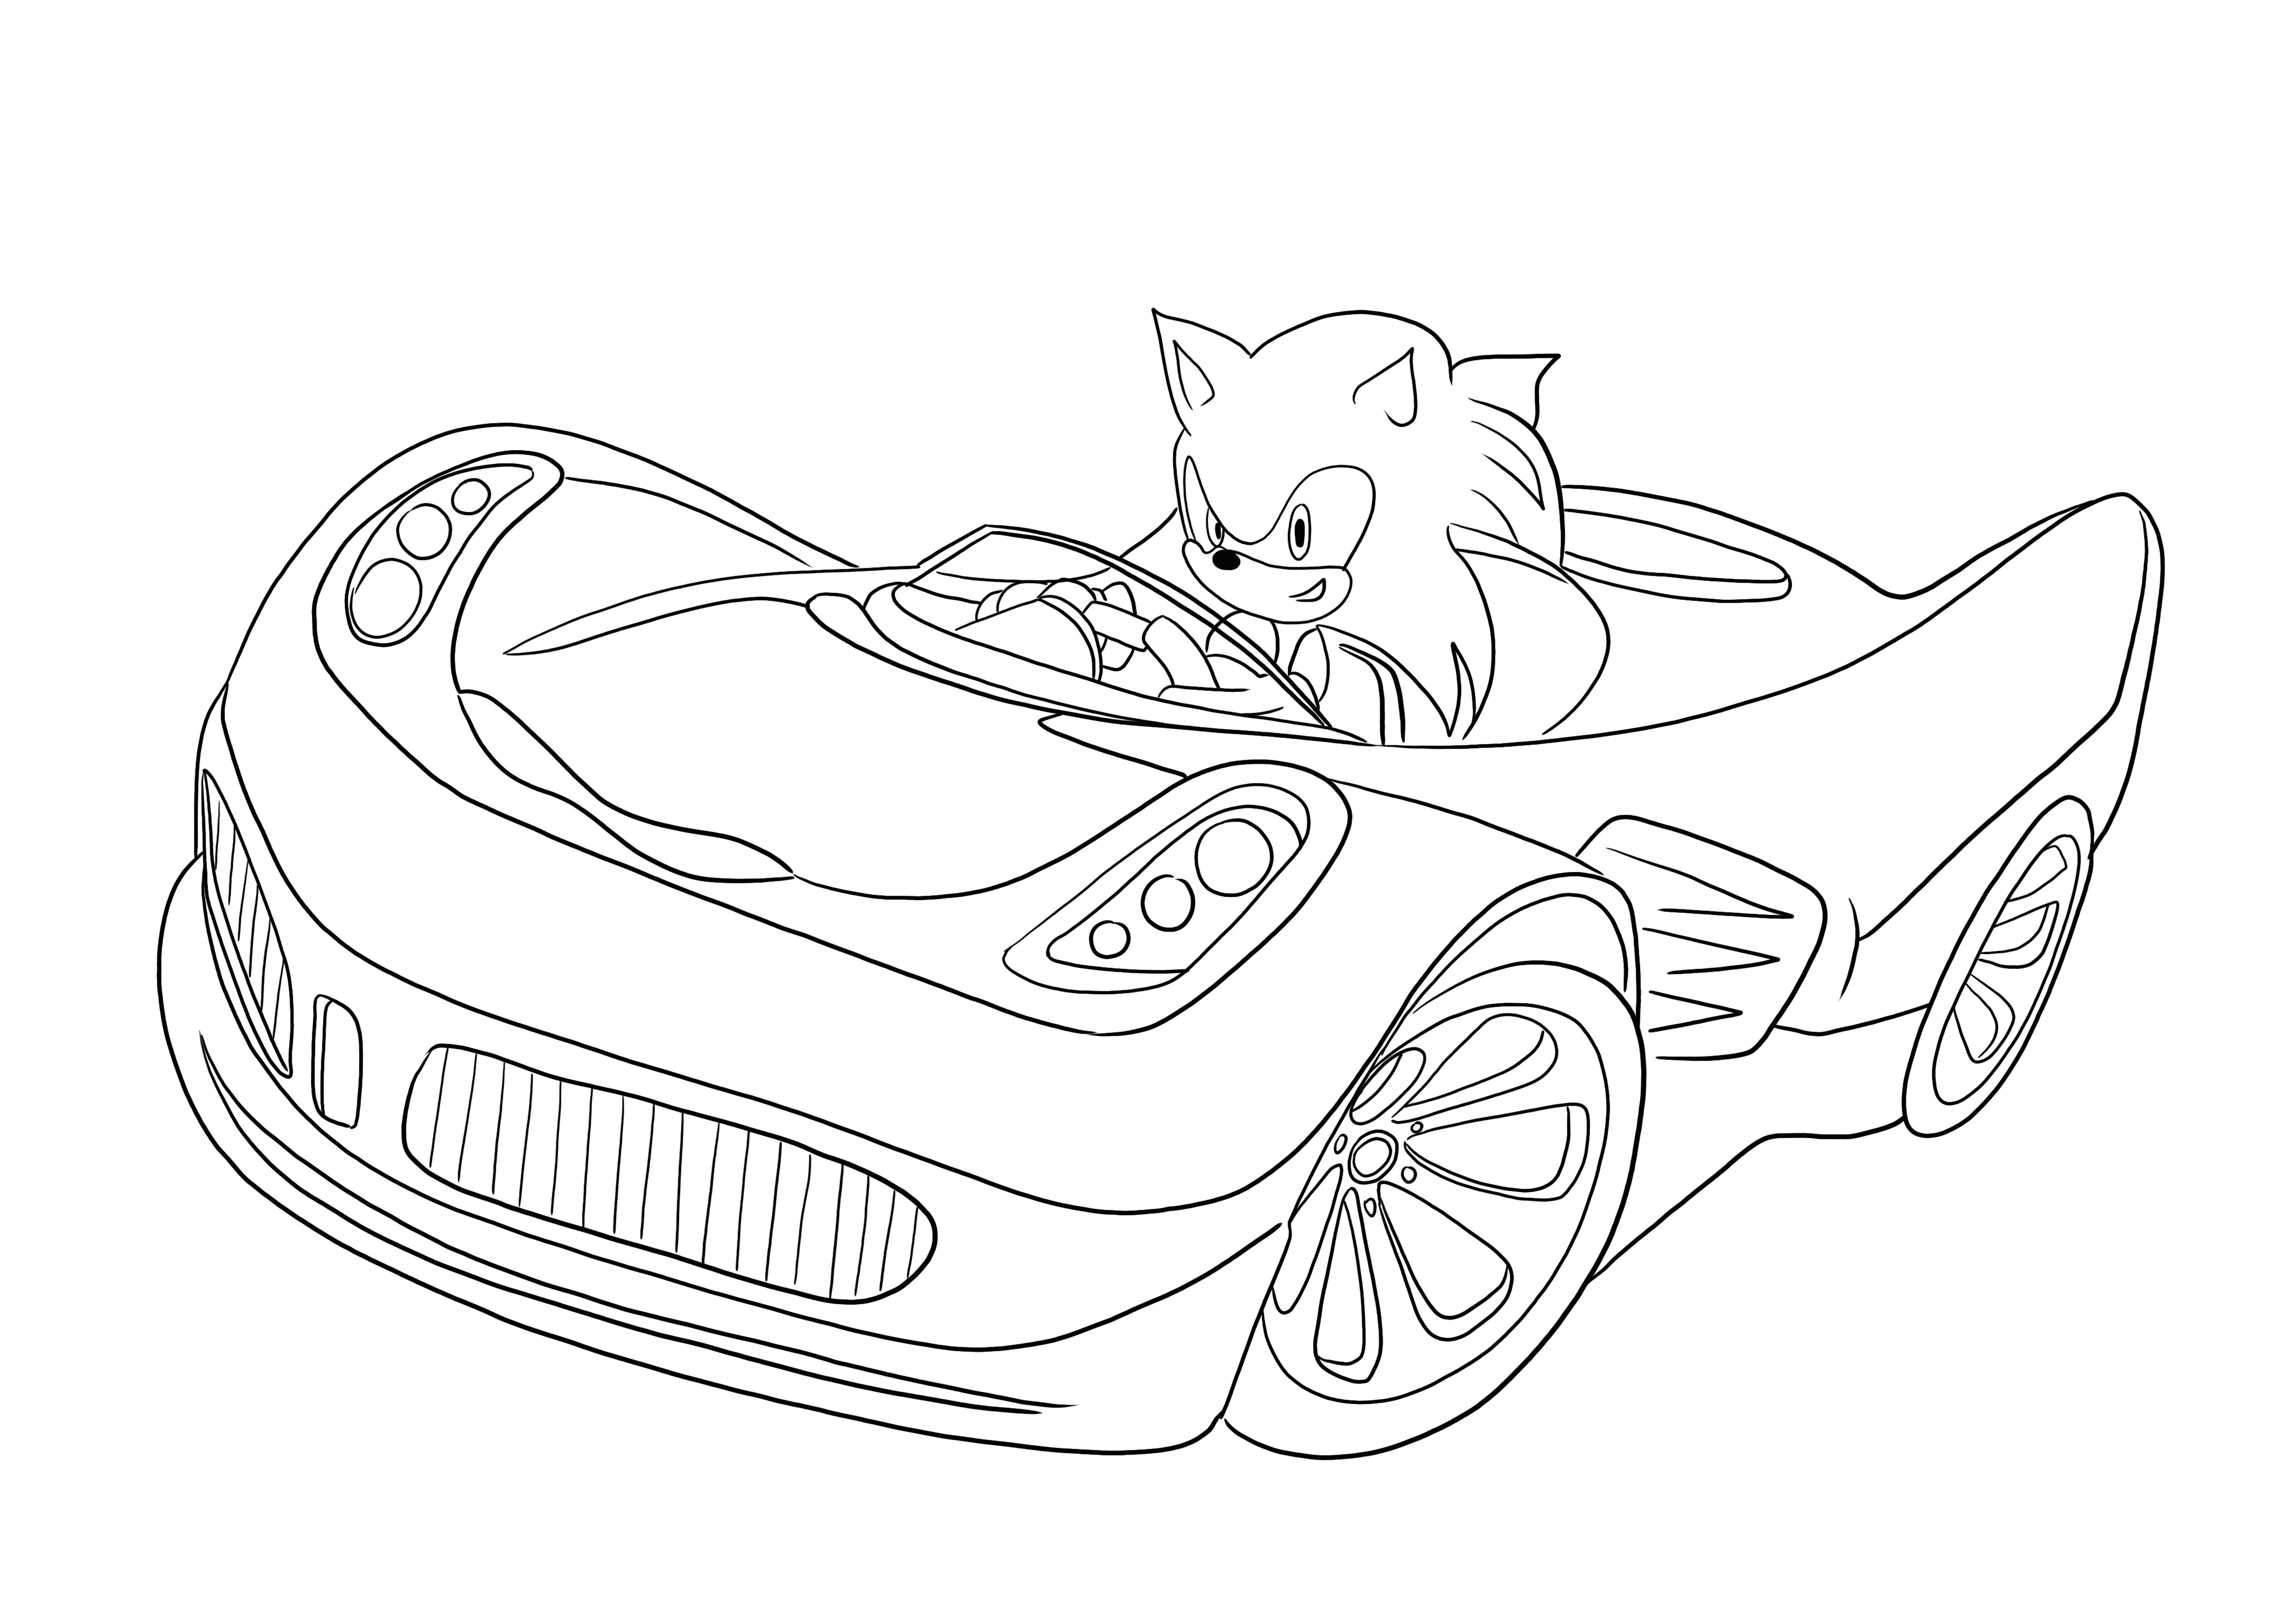 Coloriage gratuit de Sonic conduisant une voiture à imprimer et à utiliser  avec les enfants